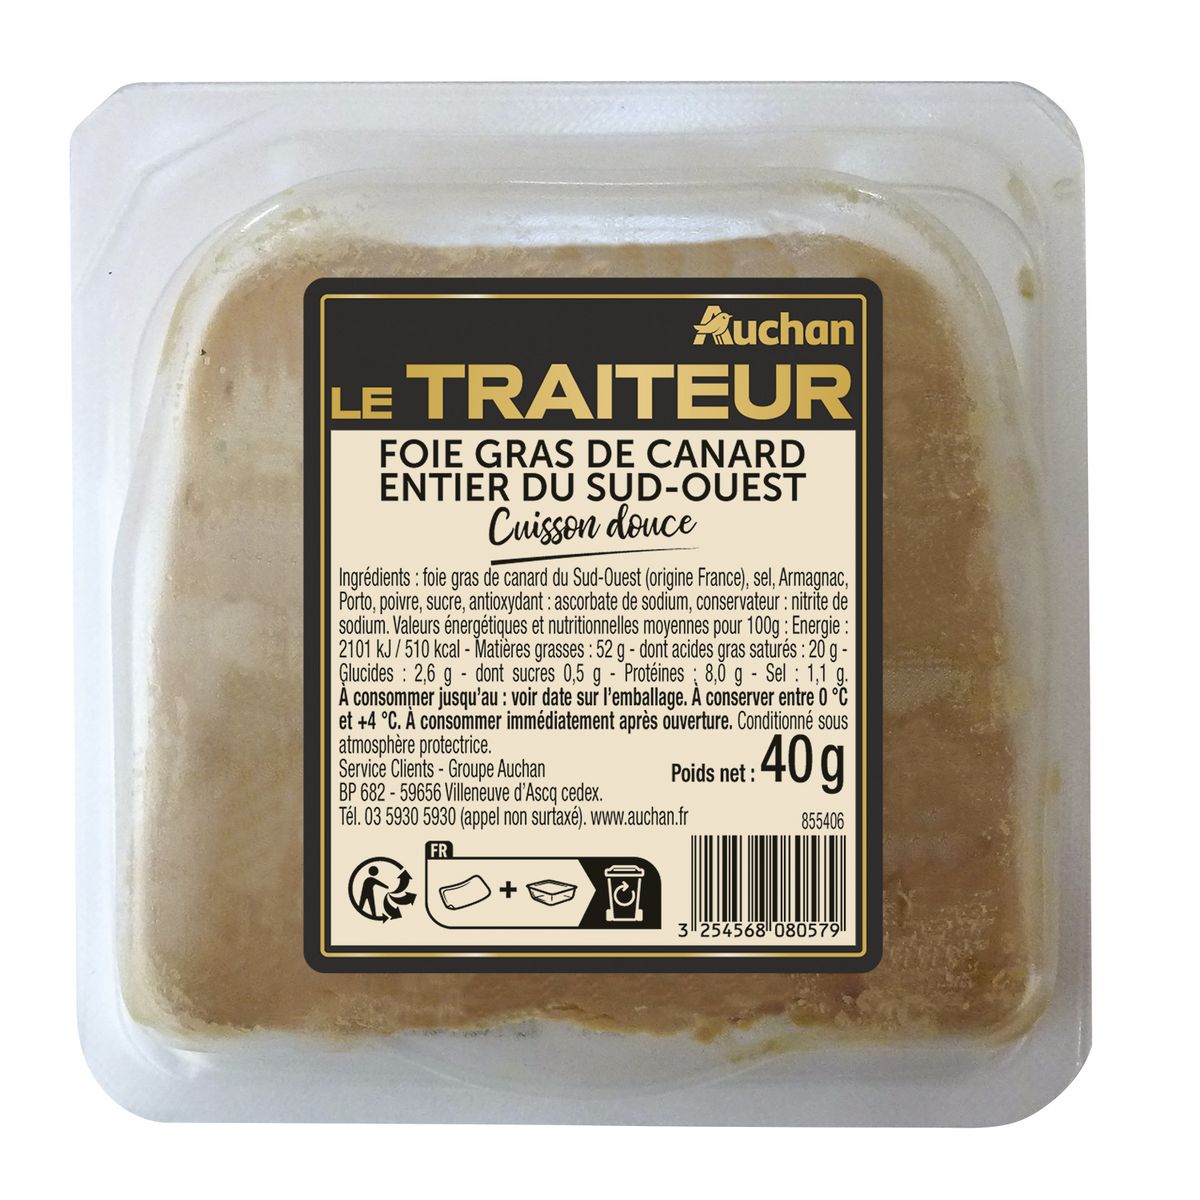 AUCHAN LE TRAITEUR Foie gras entier de canard du Sud-Ouest 1 pièce 40g